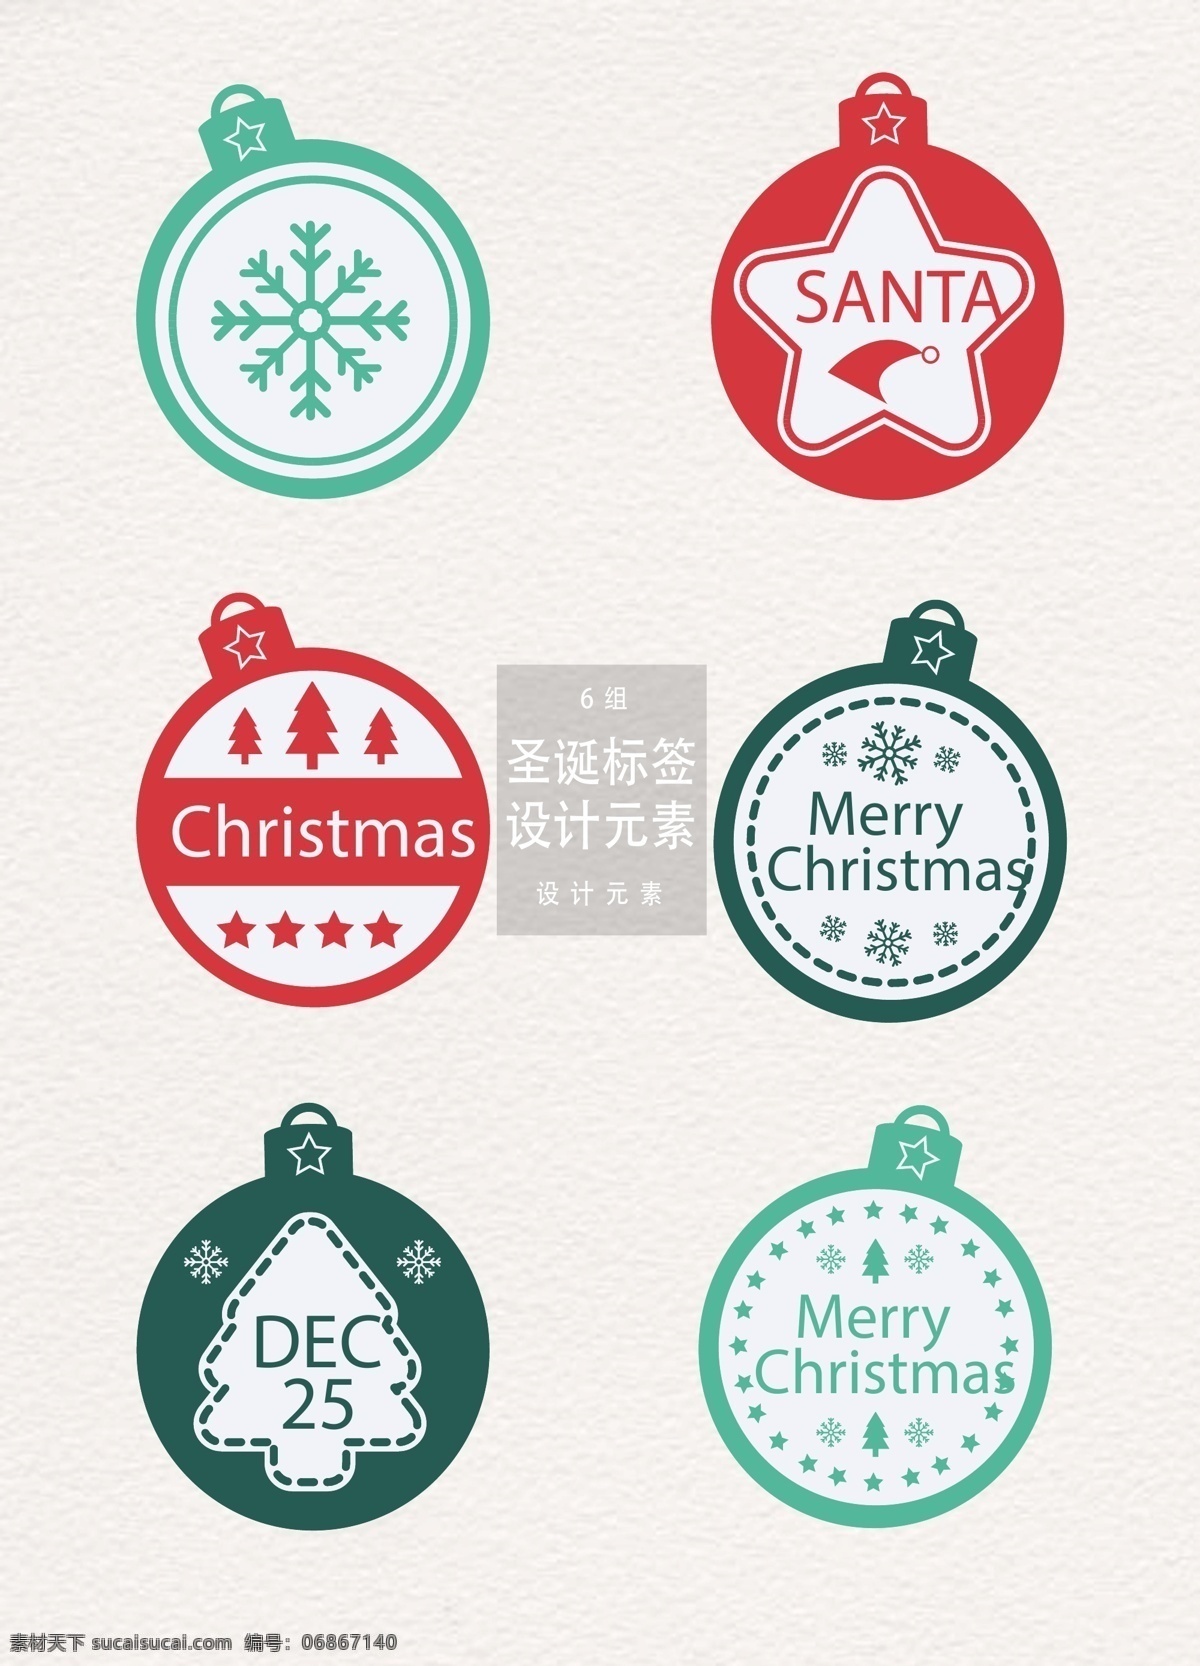 创意 圣诞 标签 元素 圣诞节 标签设计 雪花 圣诞树 矢量素材 圣诞标签